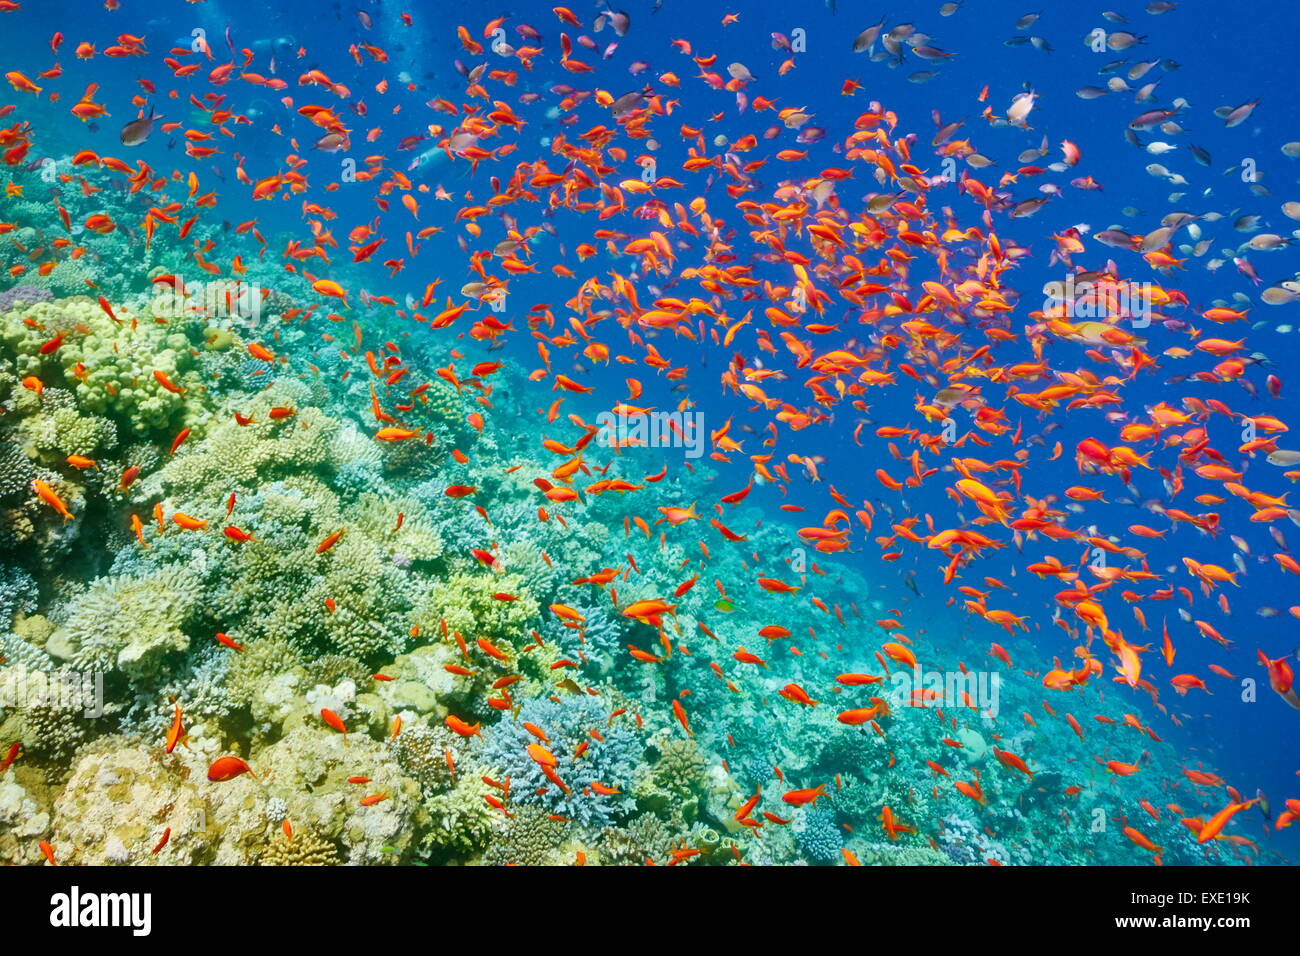 Foto subacquee, secca di pesce sulla barriera corallina in Mar Rosso, Egitto Foto Stock